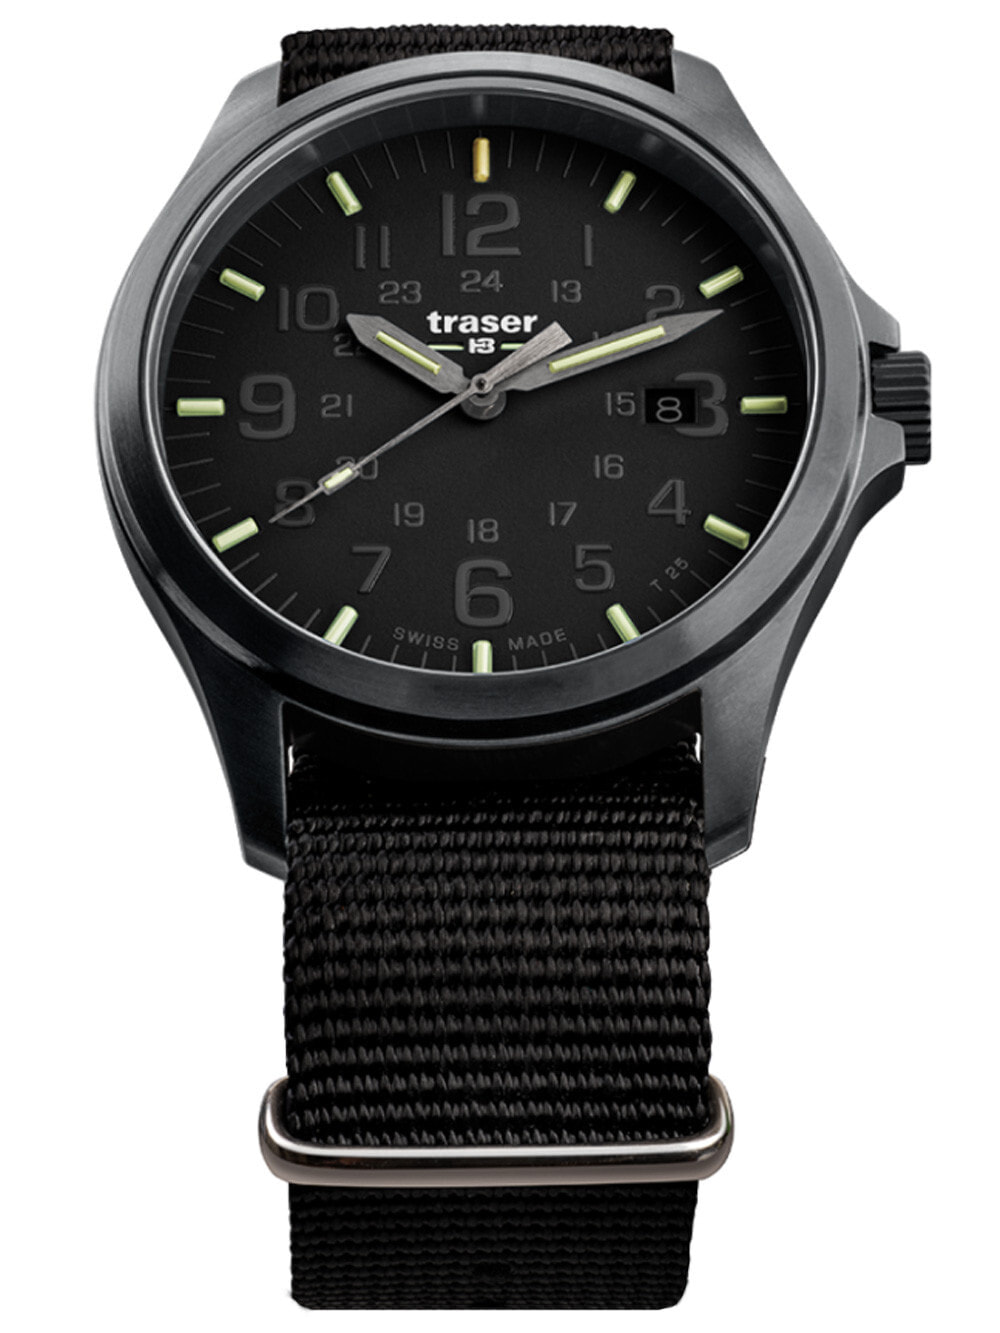 Мужские наручные часы с черным текстильным ремешком Traser H3 108744 P67 Officer Pro black Mens 42mm 10ATM